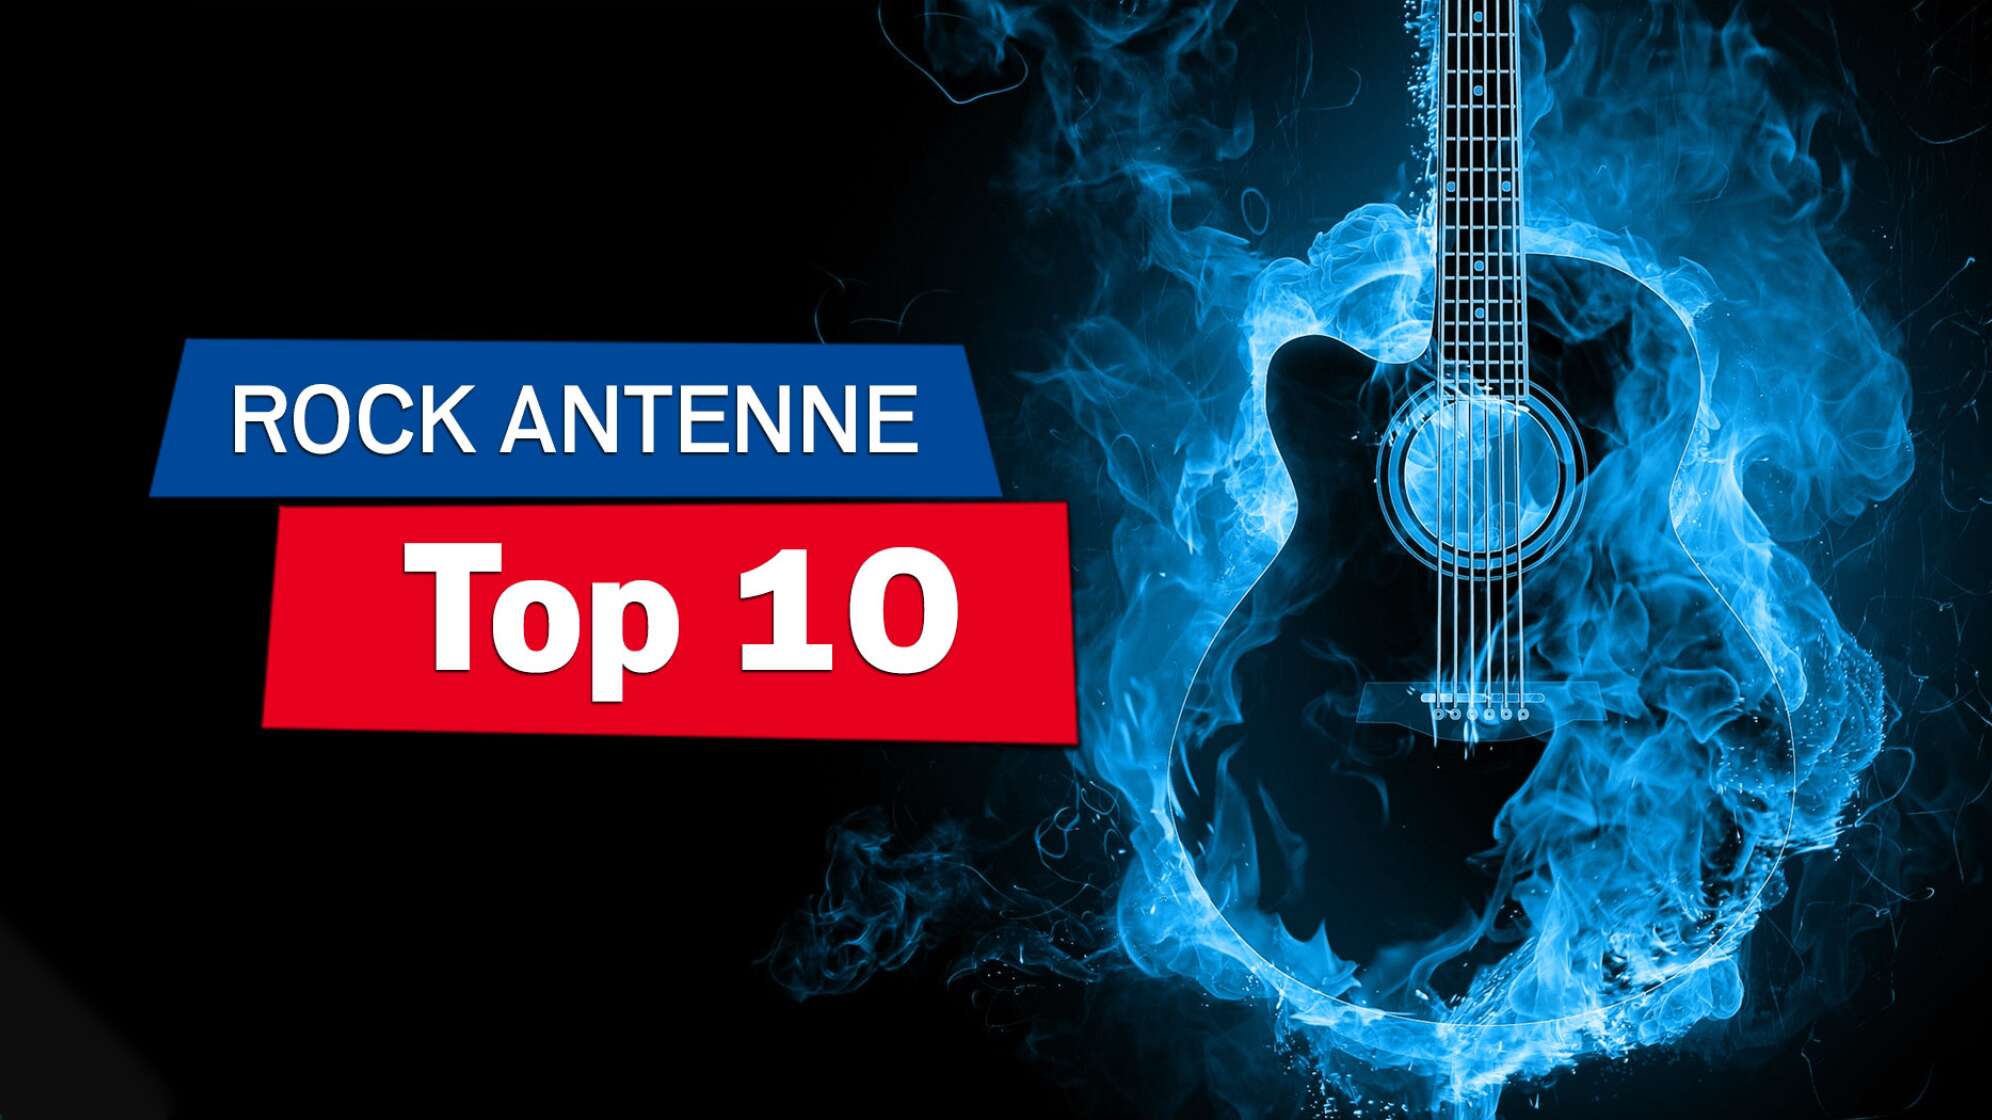 Eine Silhouette einer Gitarre umgeben von blauen Flammen, Bildaufschrift: Die ROCK ANTENNE Top 10"